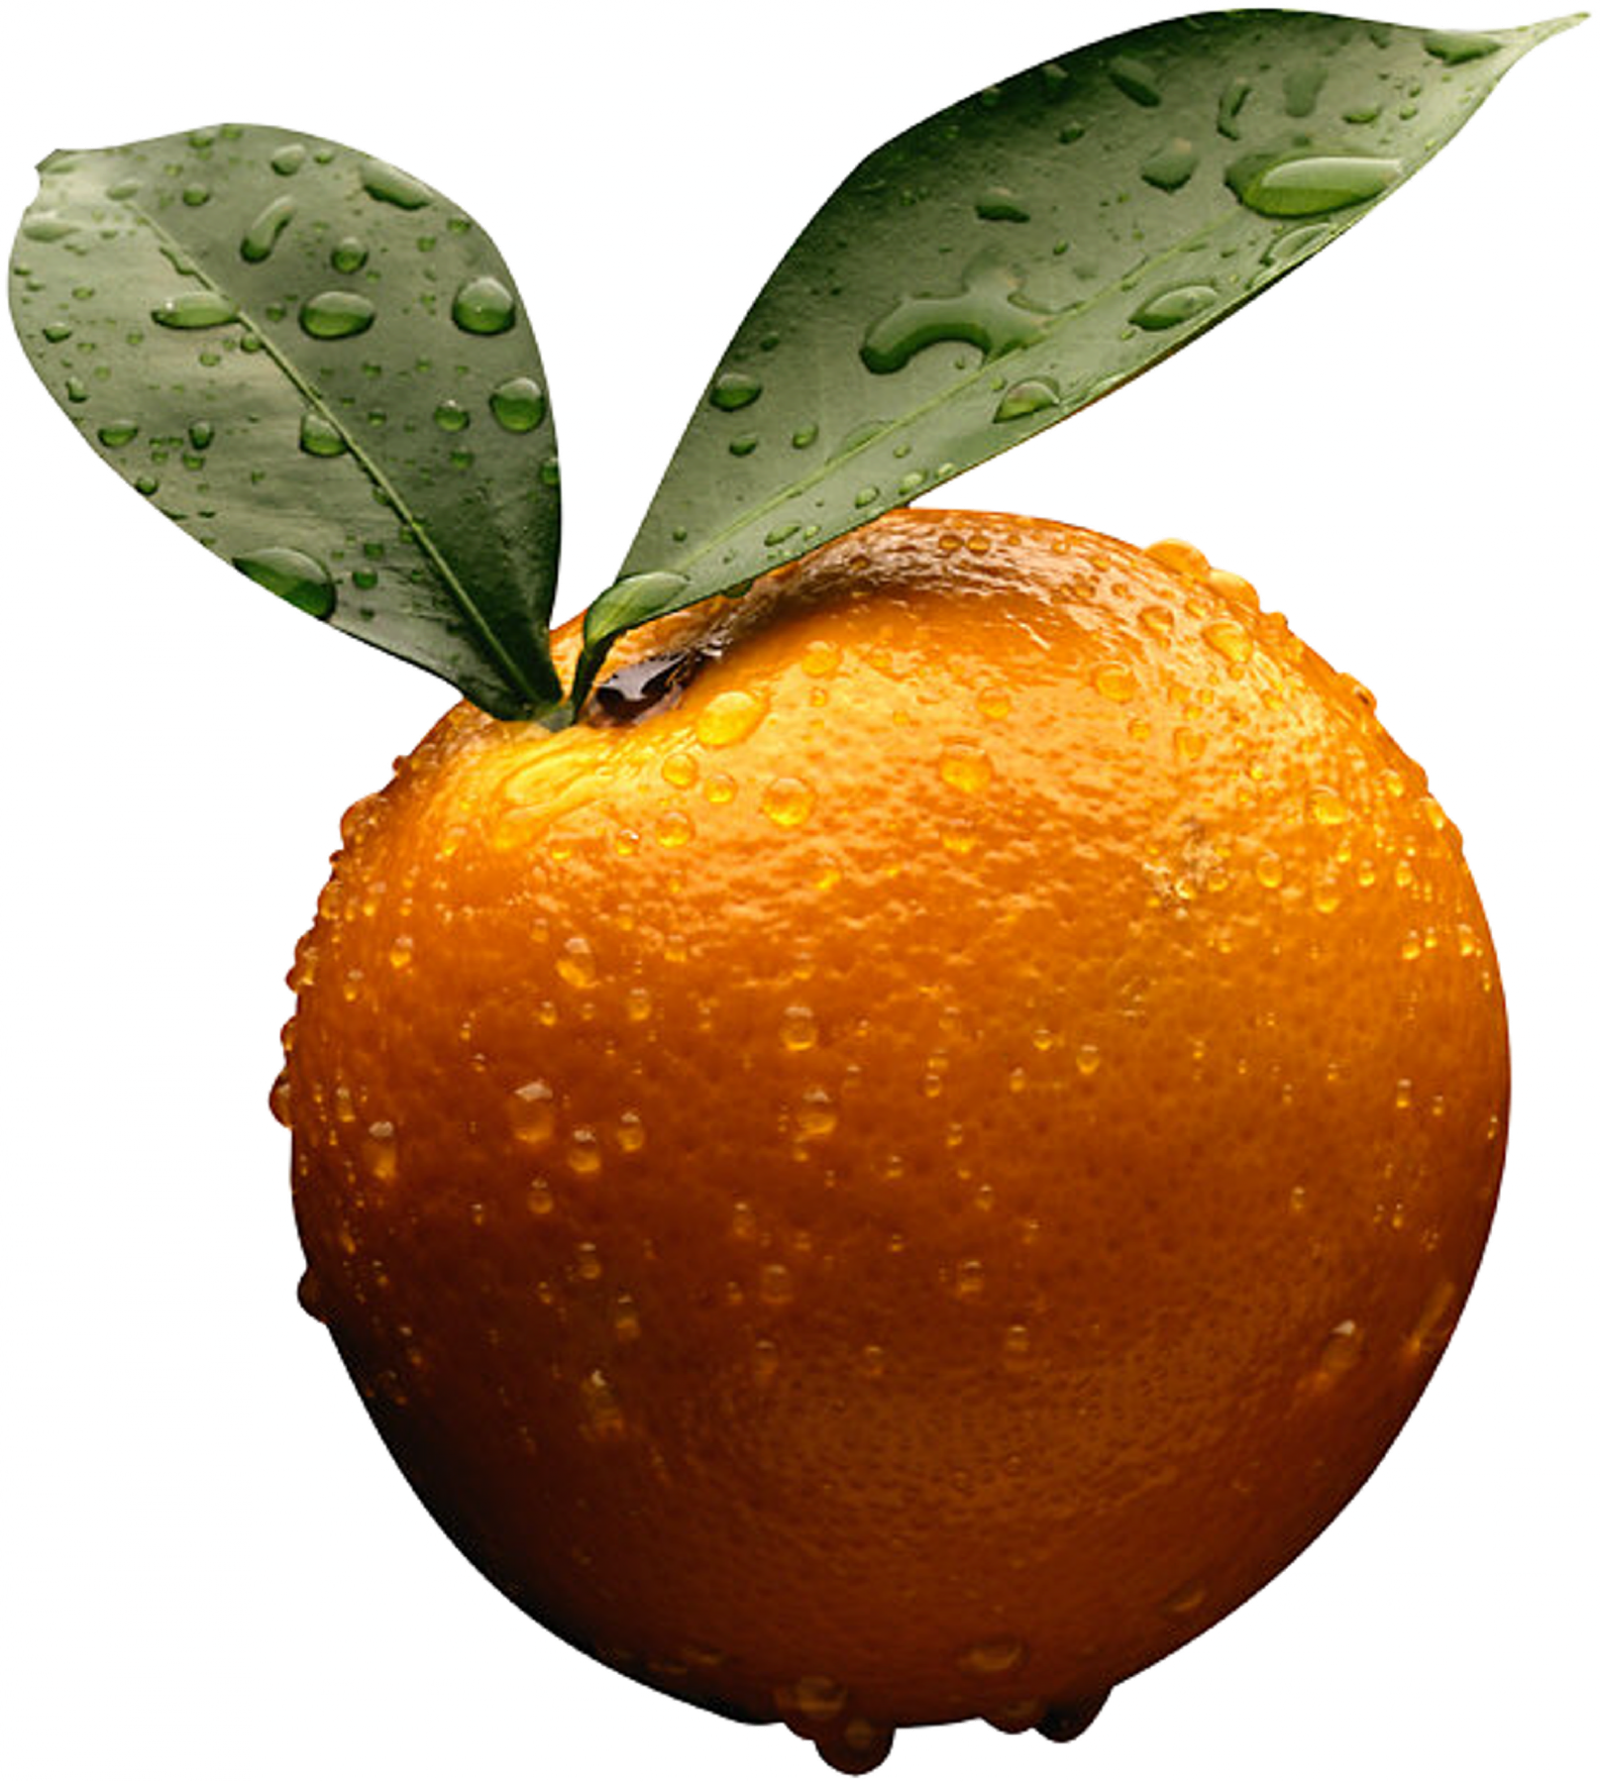 oranges clipart camera